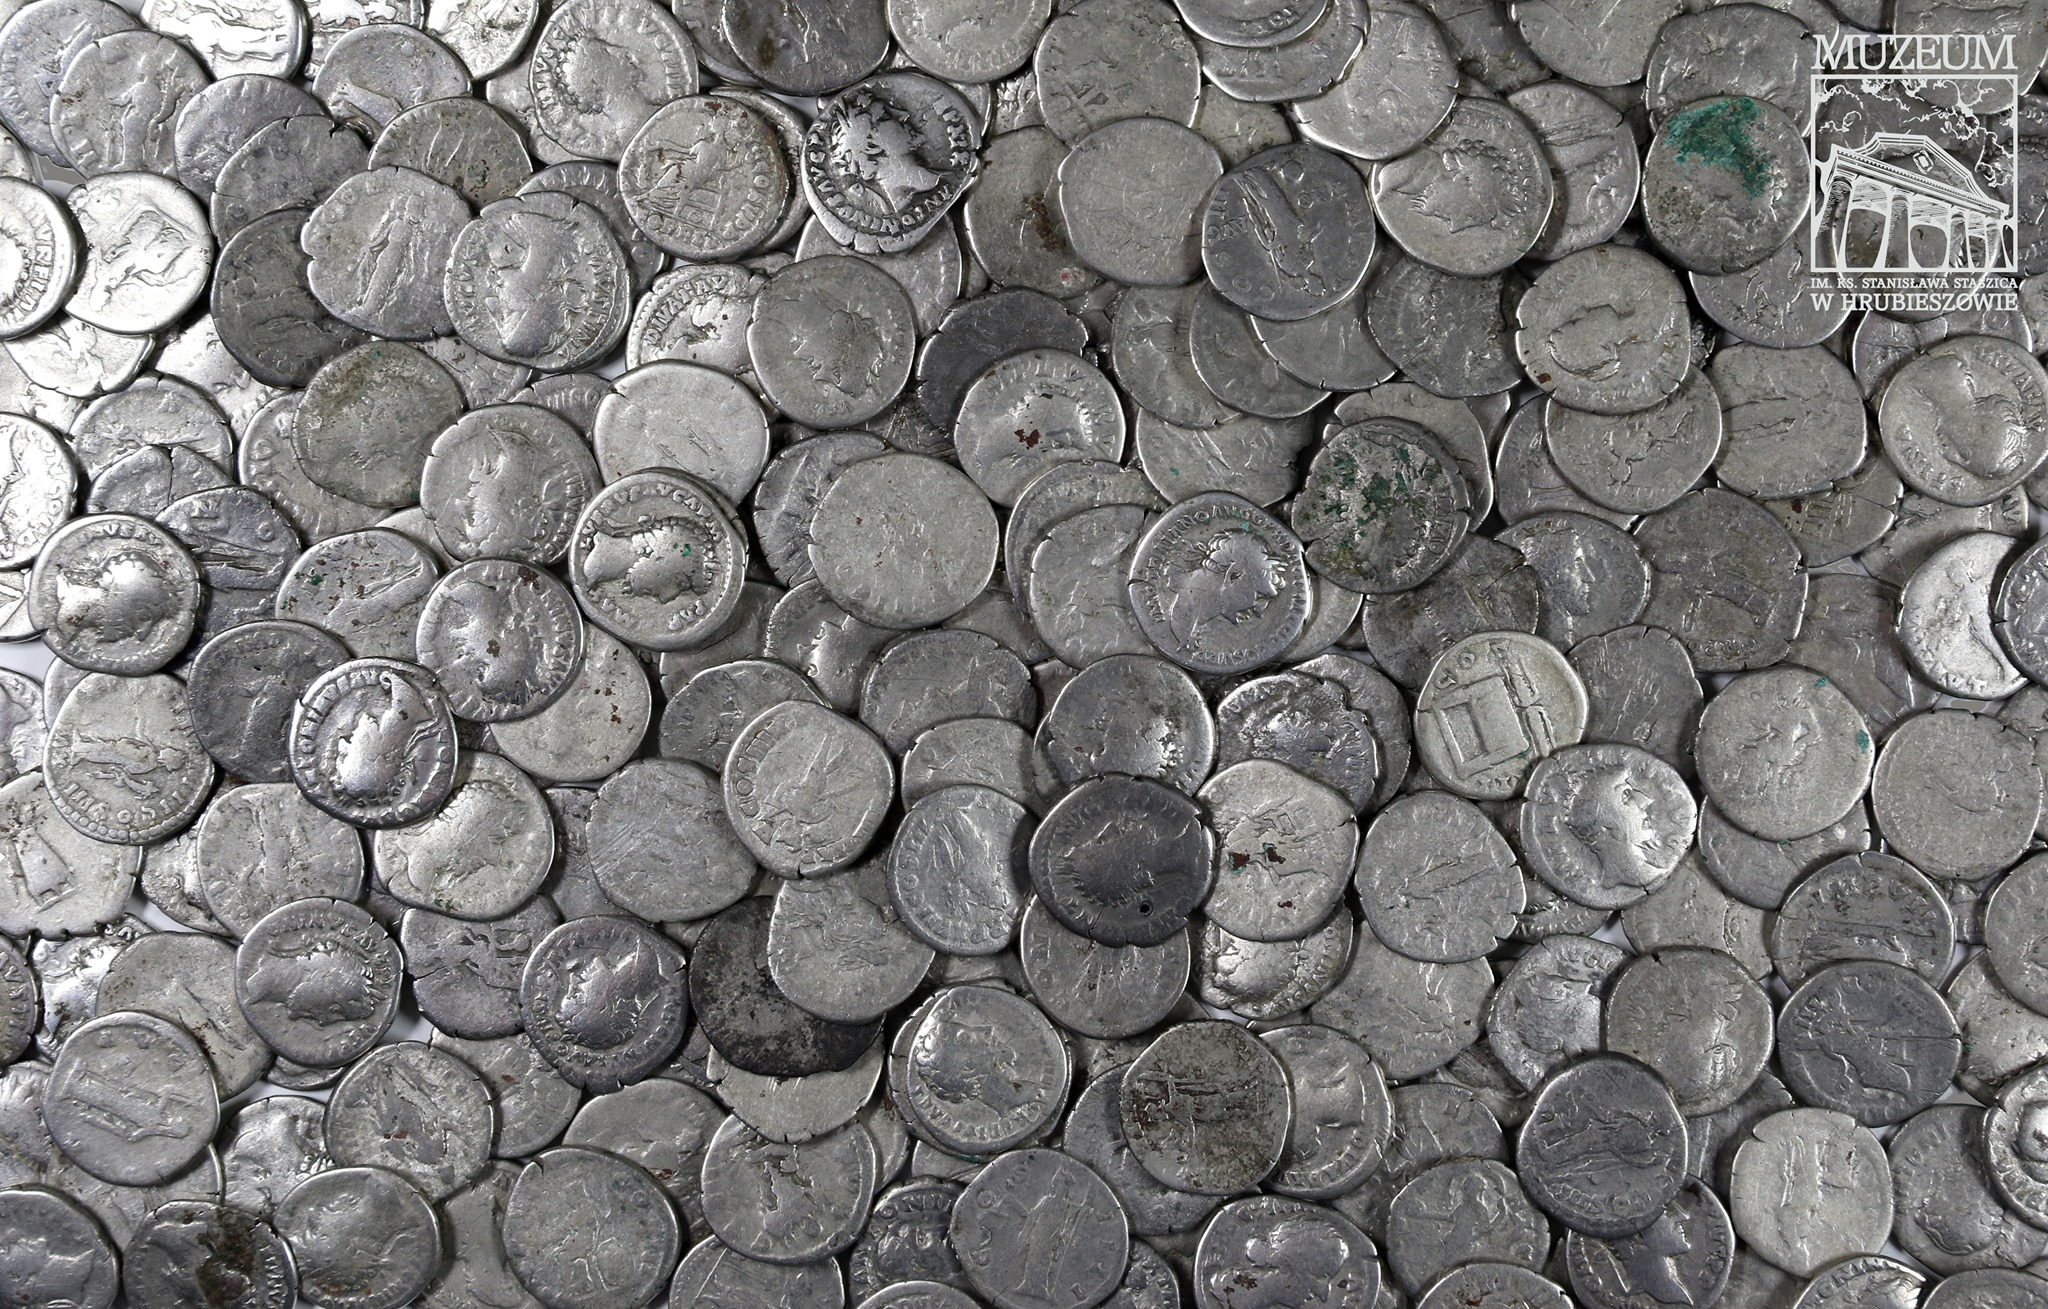 Nálezy mincí detektorem kovů